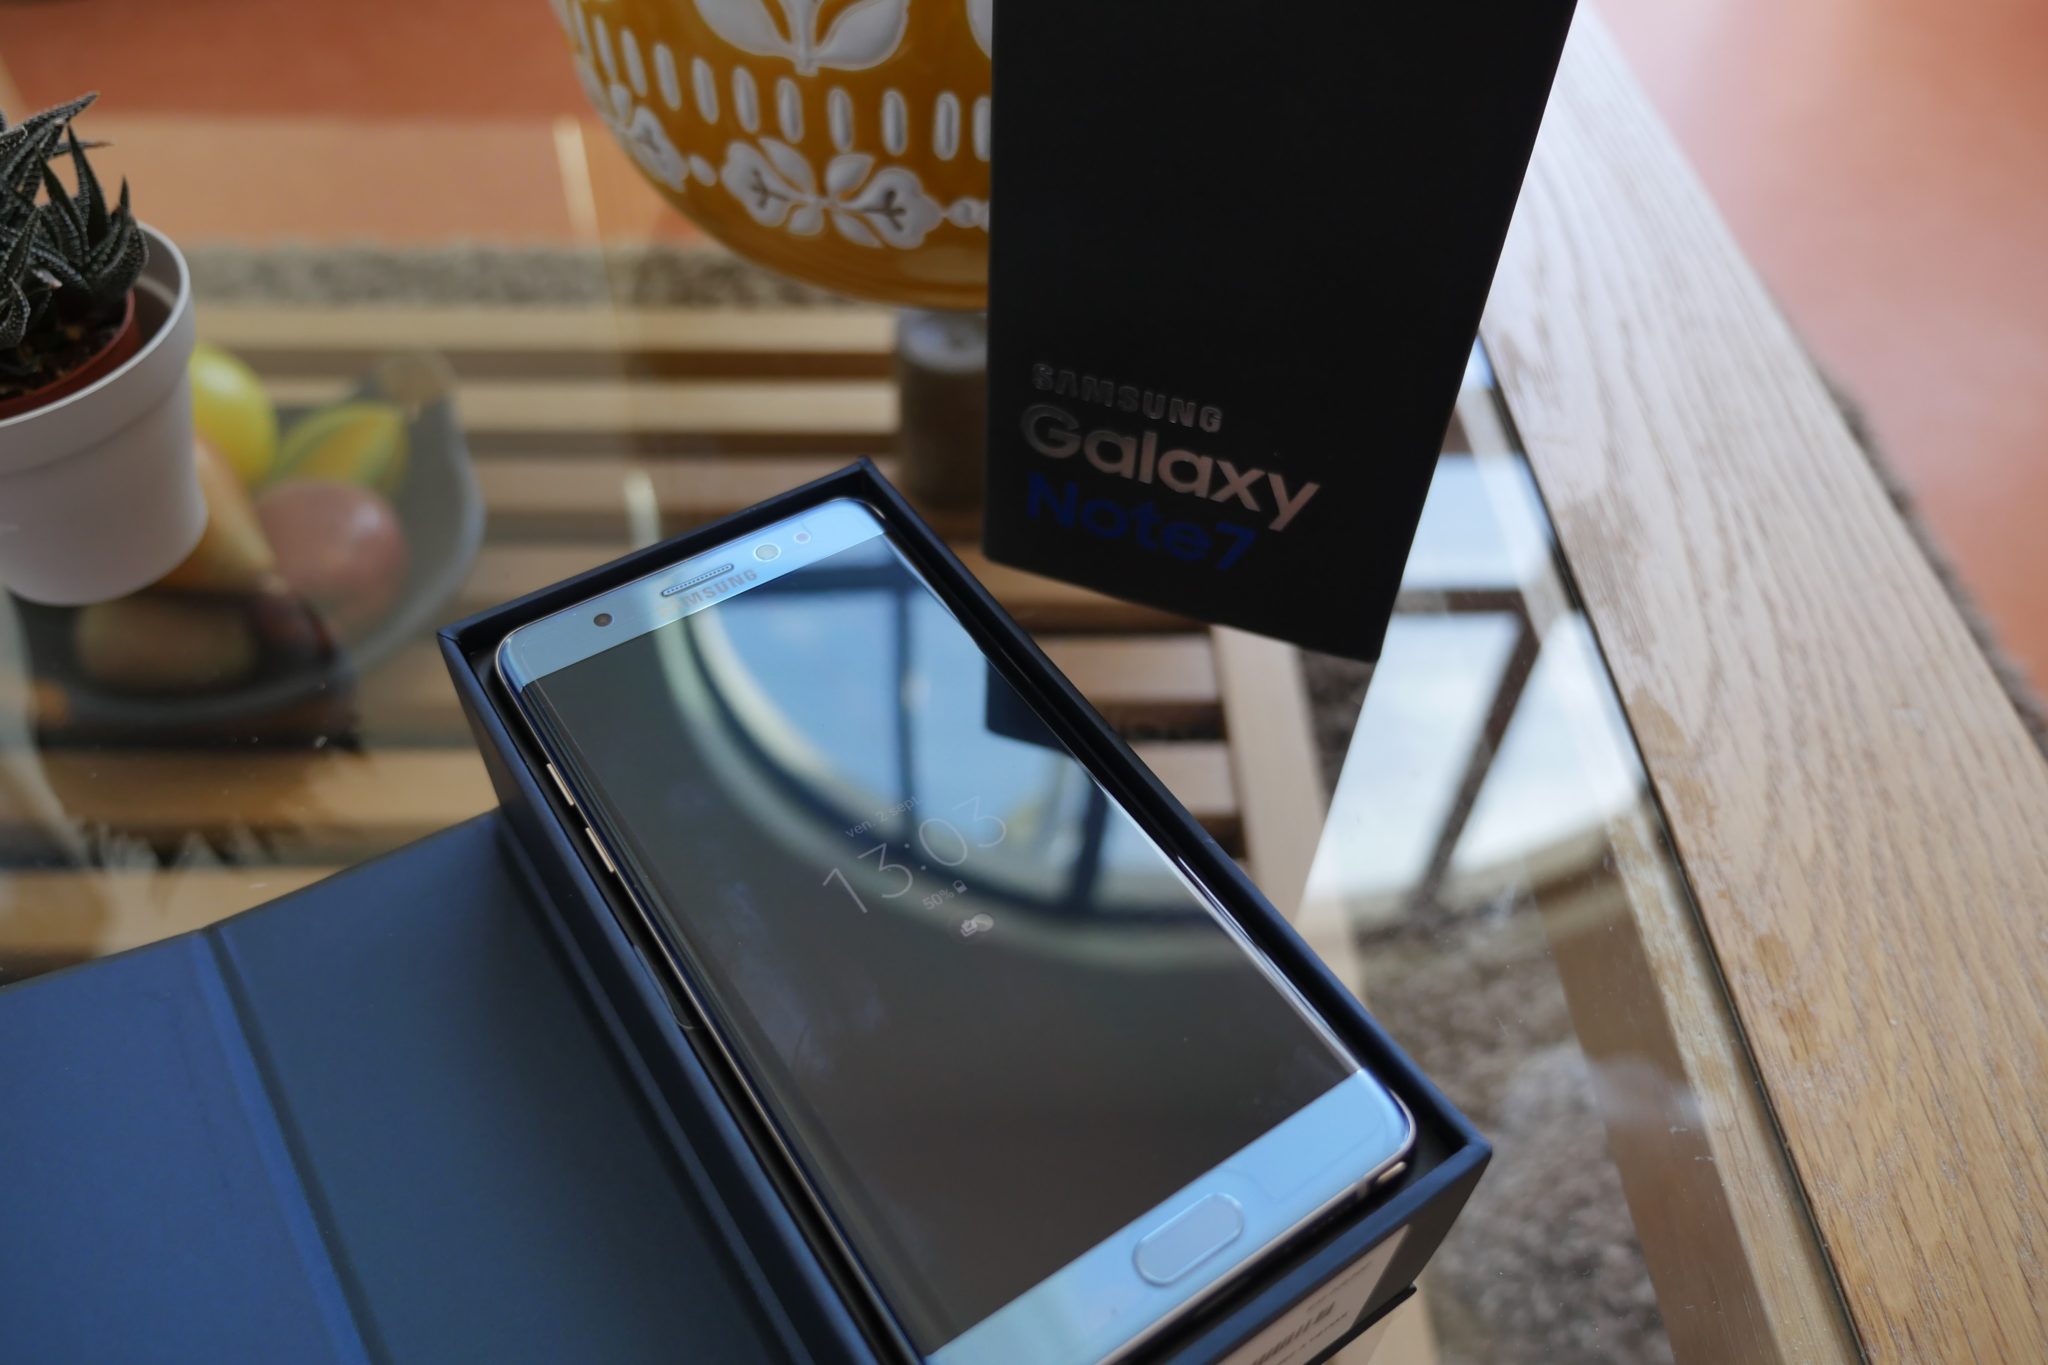 Le Galaxy Note 7 prêt à renaître de ses cendres ?